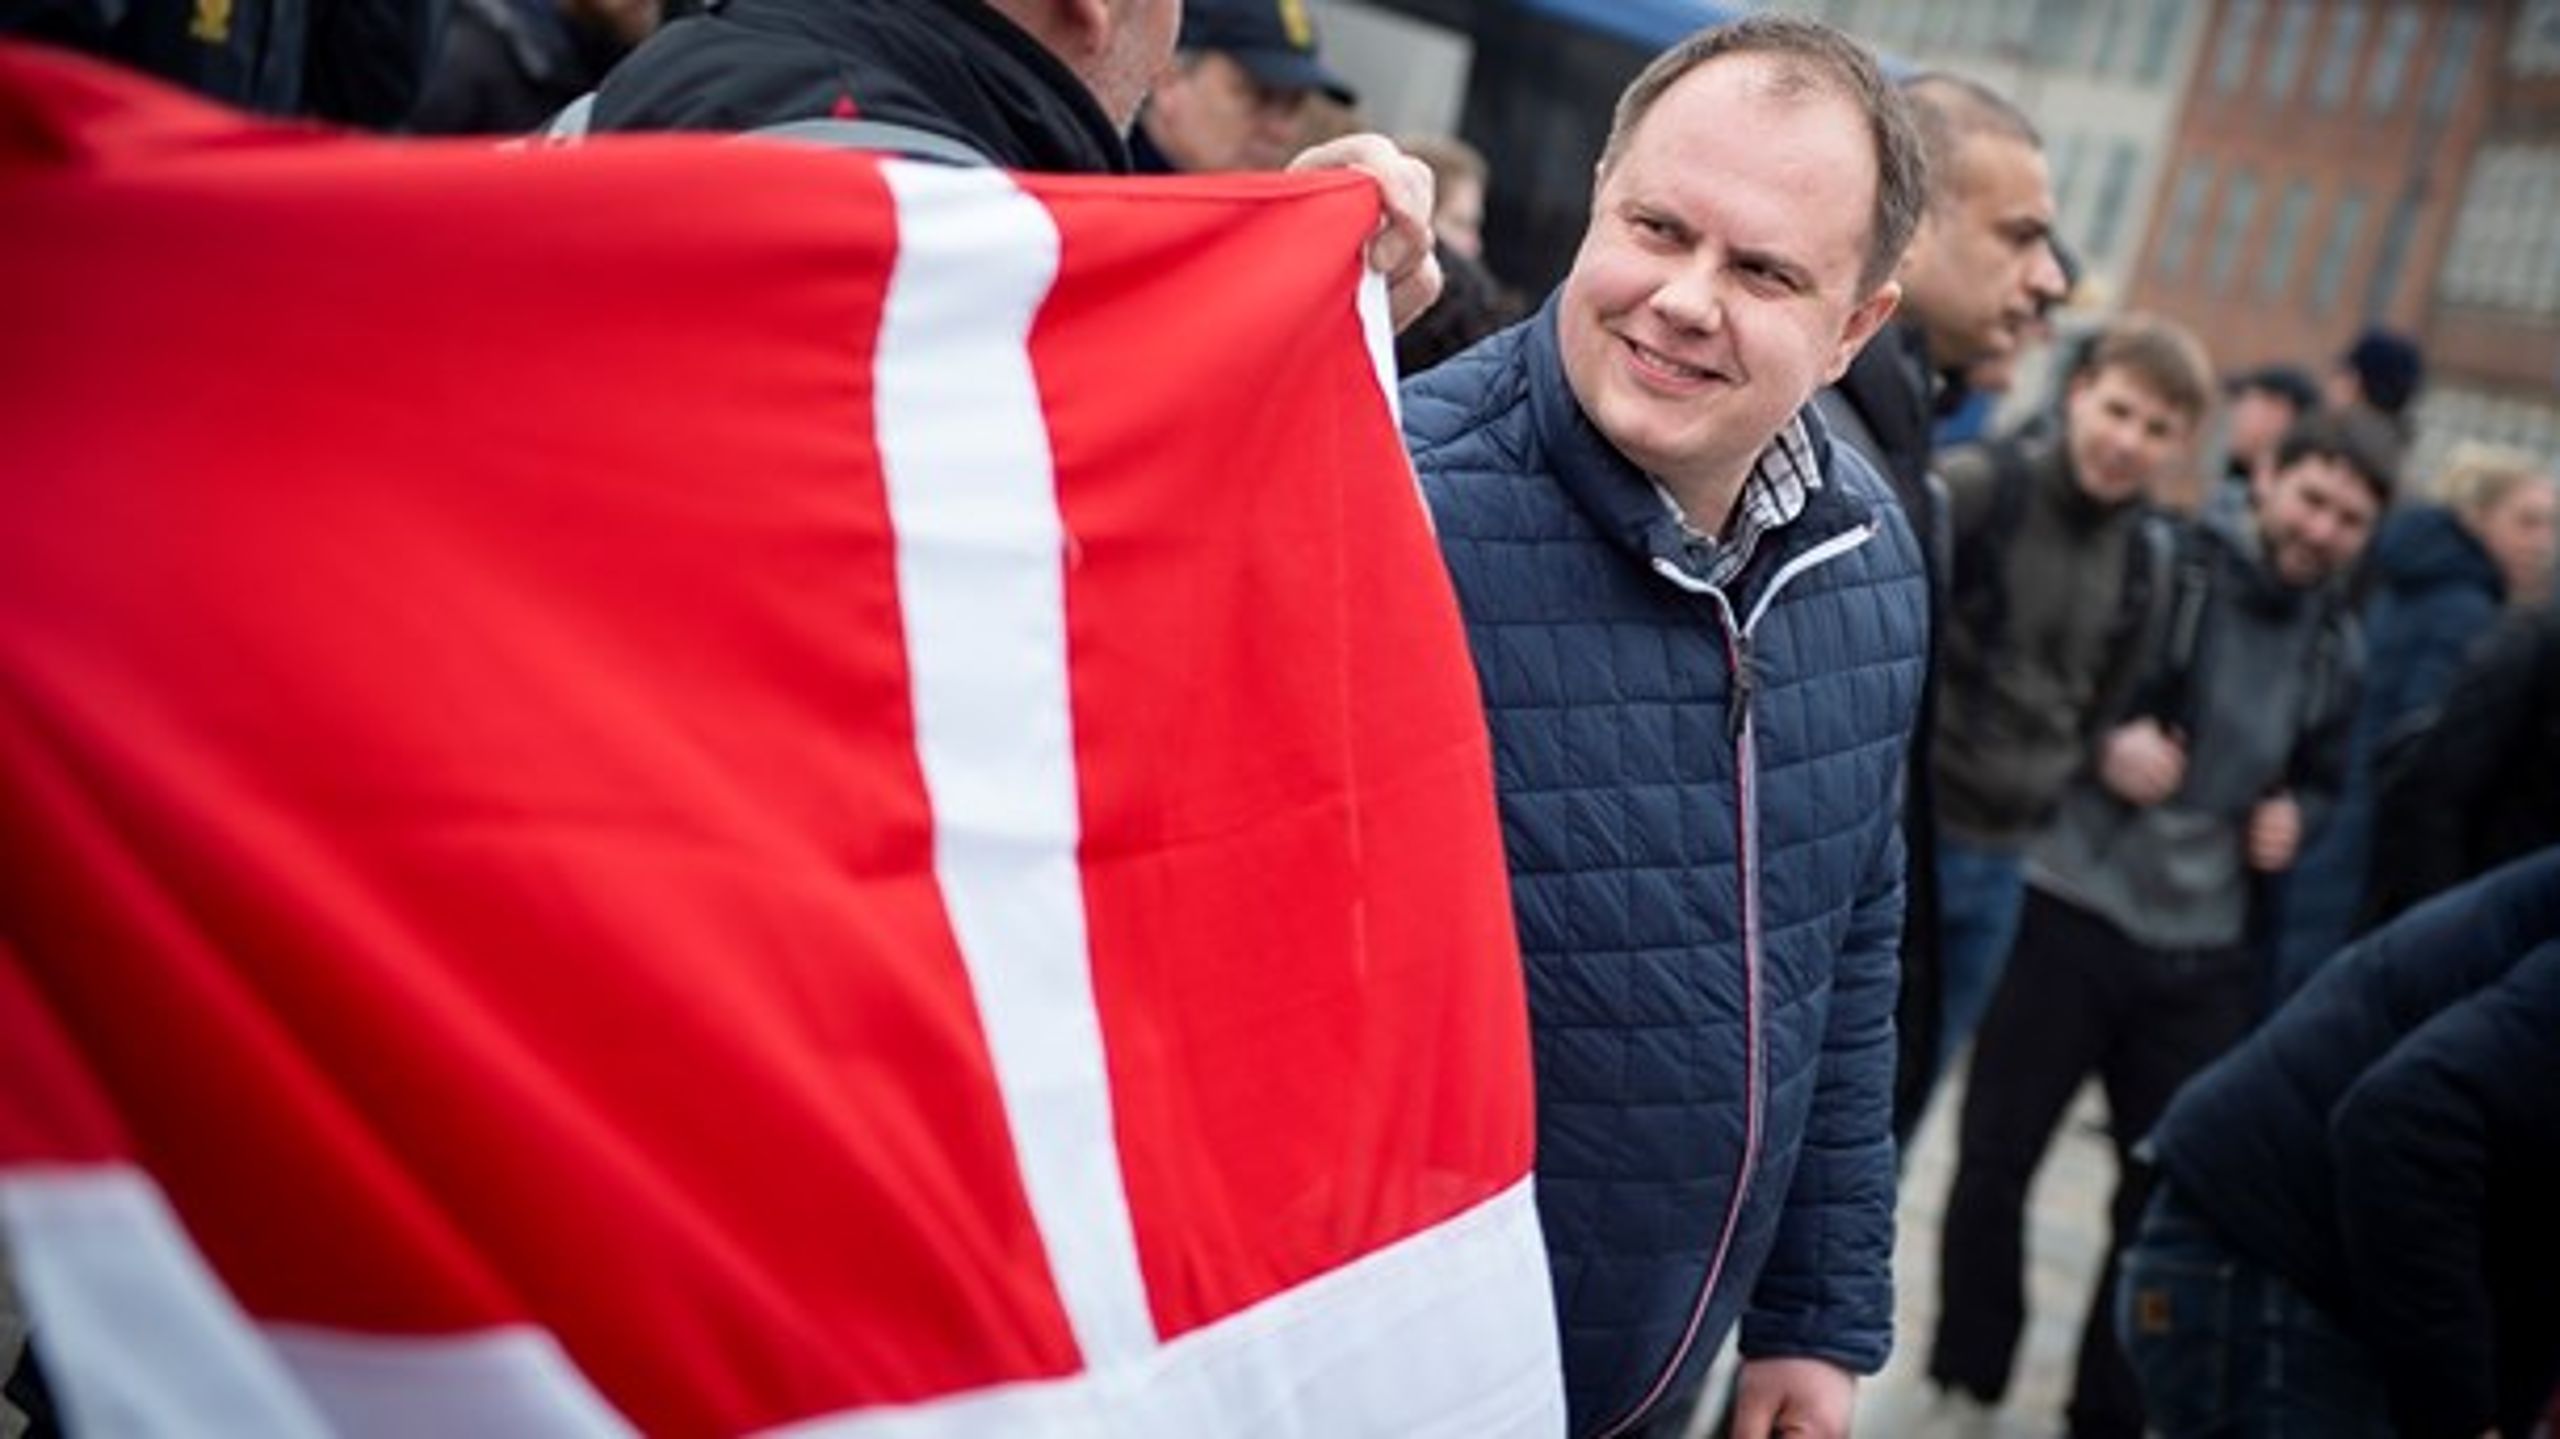 Martin Henriksens udgave af fædrelandskærlighed vil gøre, at Danmark alene bliver en regelmodtager, mener Claus von Barnekow.